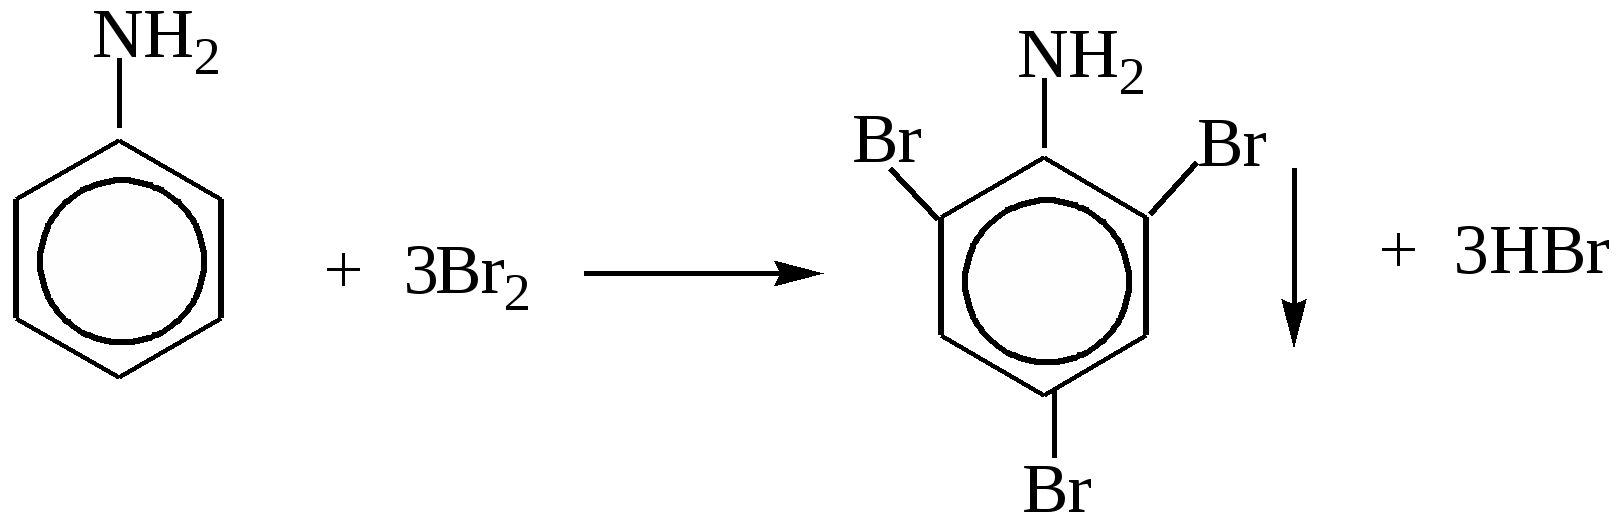 Анилин гидроксид меди 2. Анилин caocl2. Анилин плюс хлорная известь. Анилин и хлорная известь качественная реакция. Анилин с хлорной известью реакция.